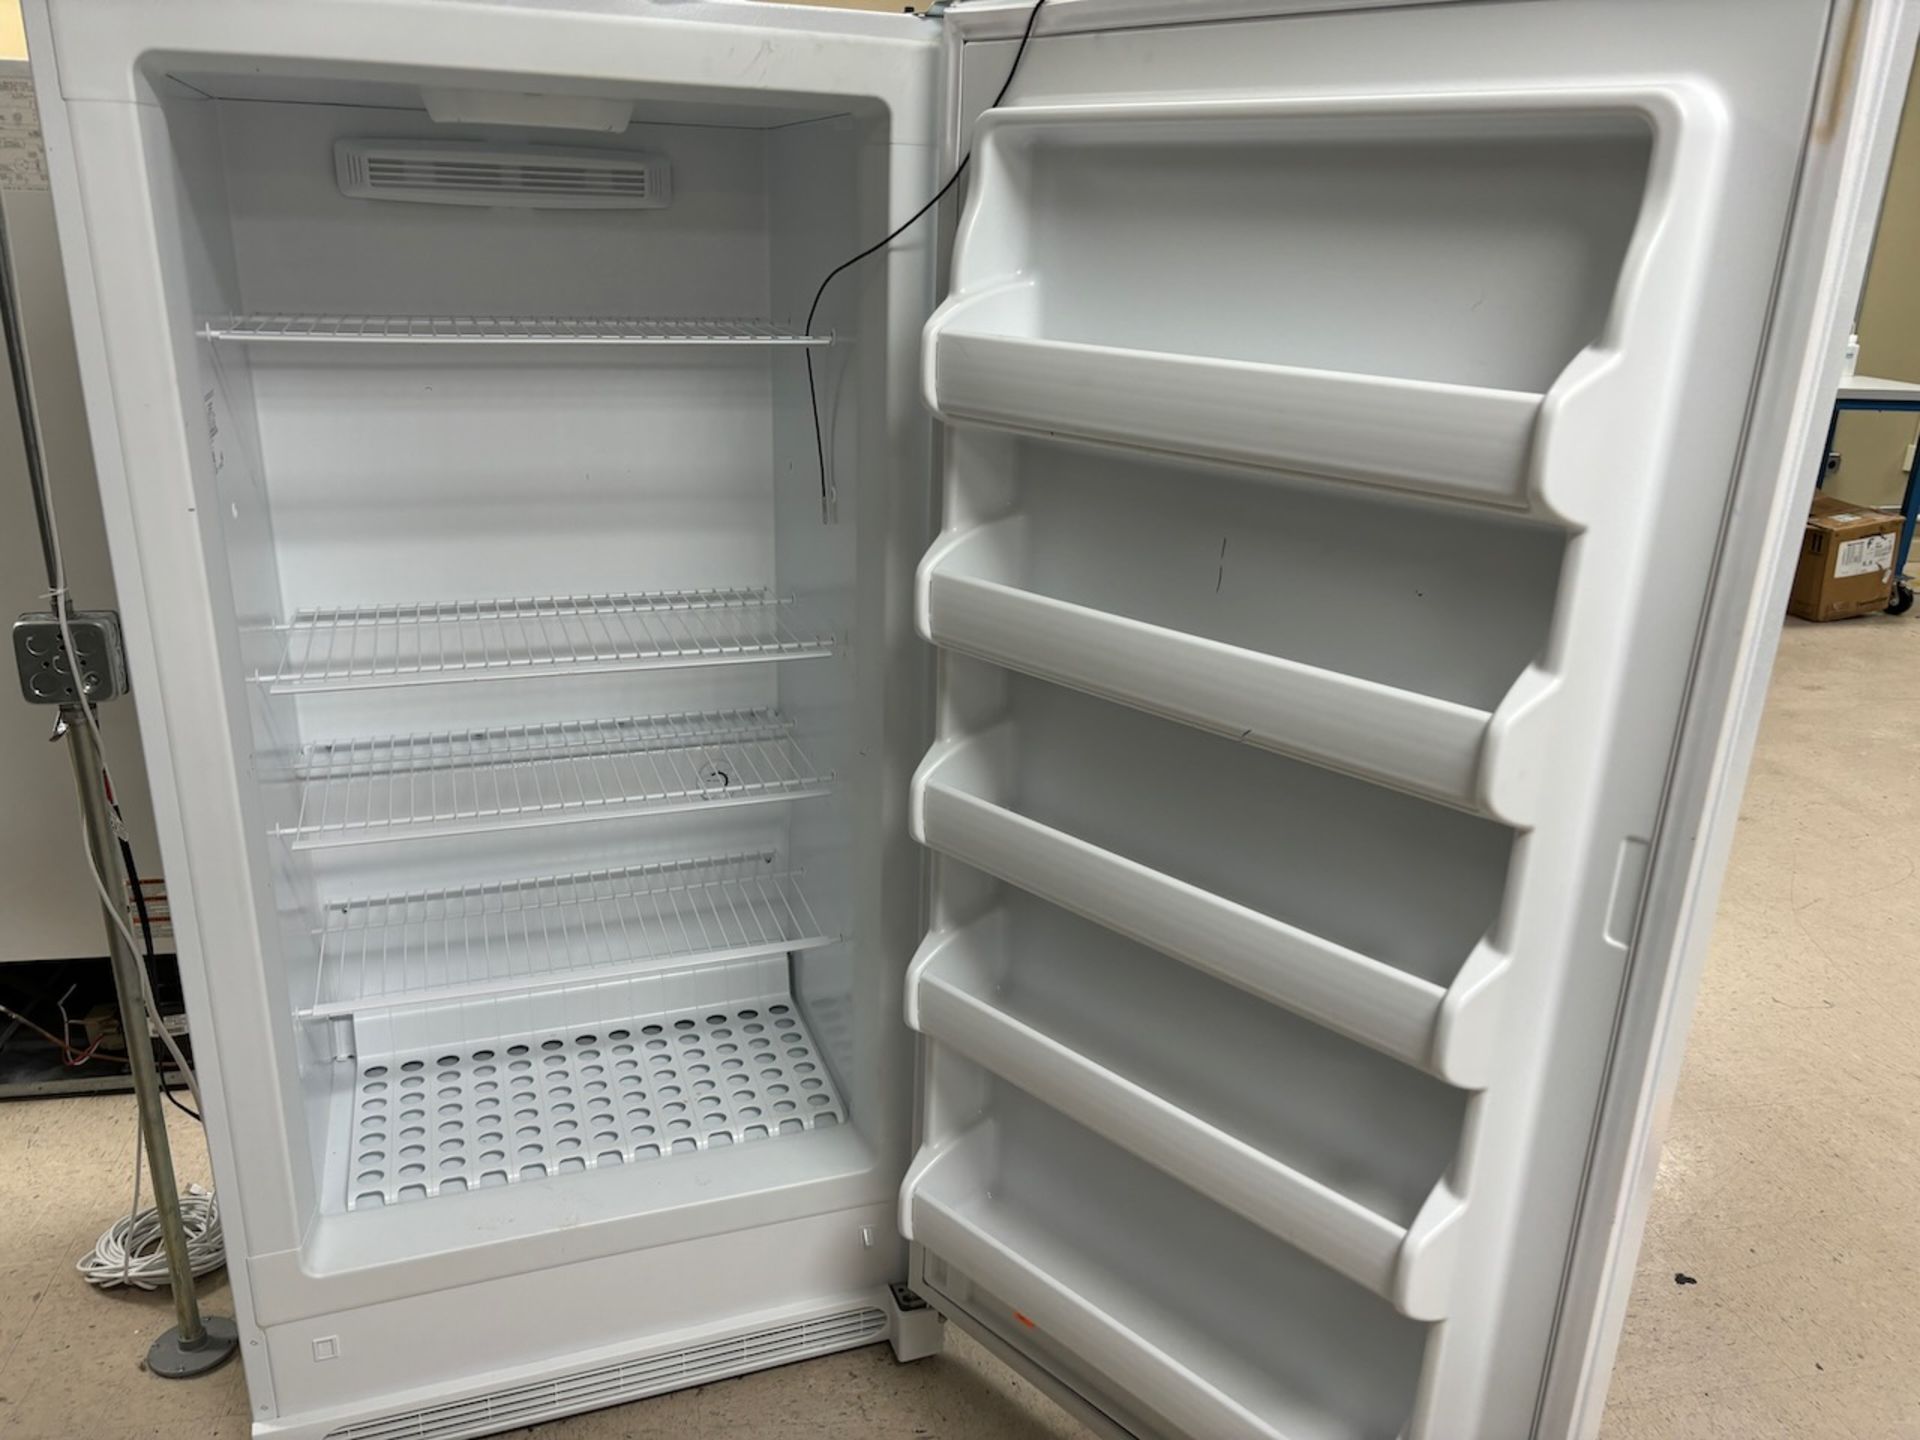 Frigidaire Upright Freezer - Image 2 of 3